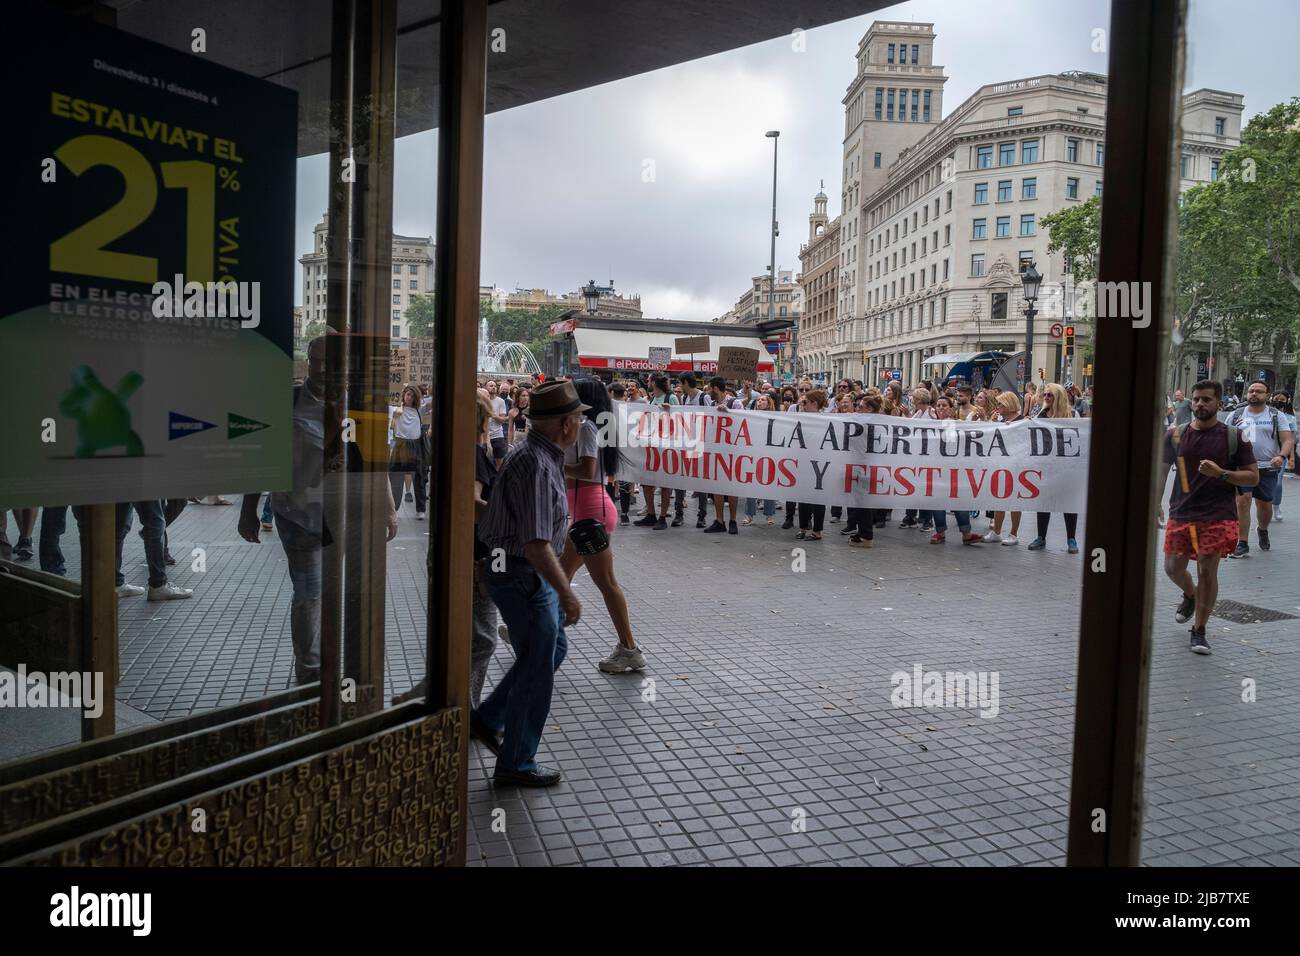 y trabajadores tienen una pancarta contra la apertura comercial los domingos y a la del popular establecimiento El Corte Inglés en Plaza de Catalunya. Gritando «Queremos reconciliar trabajo